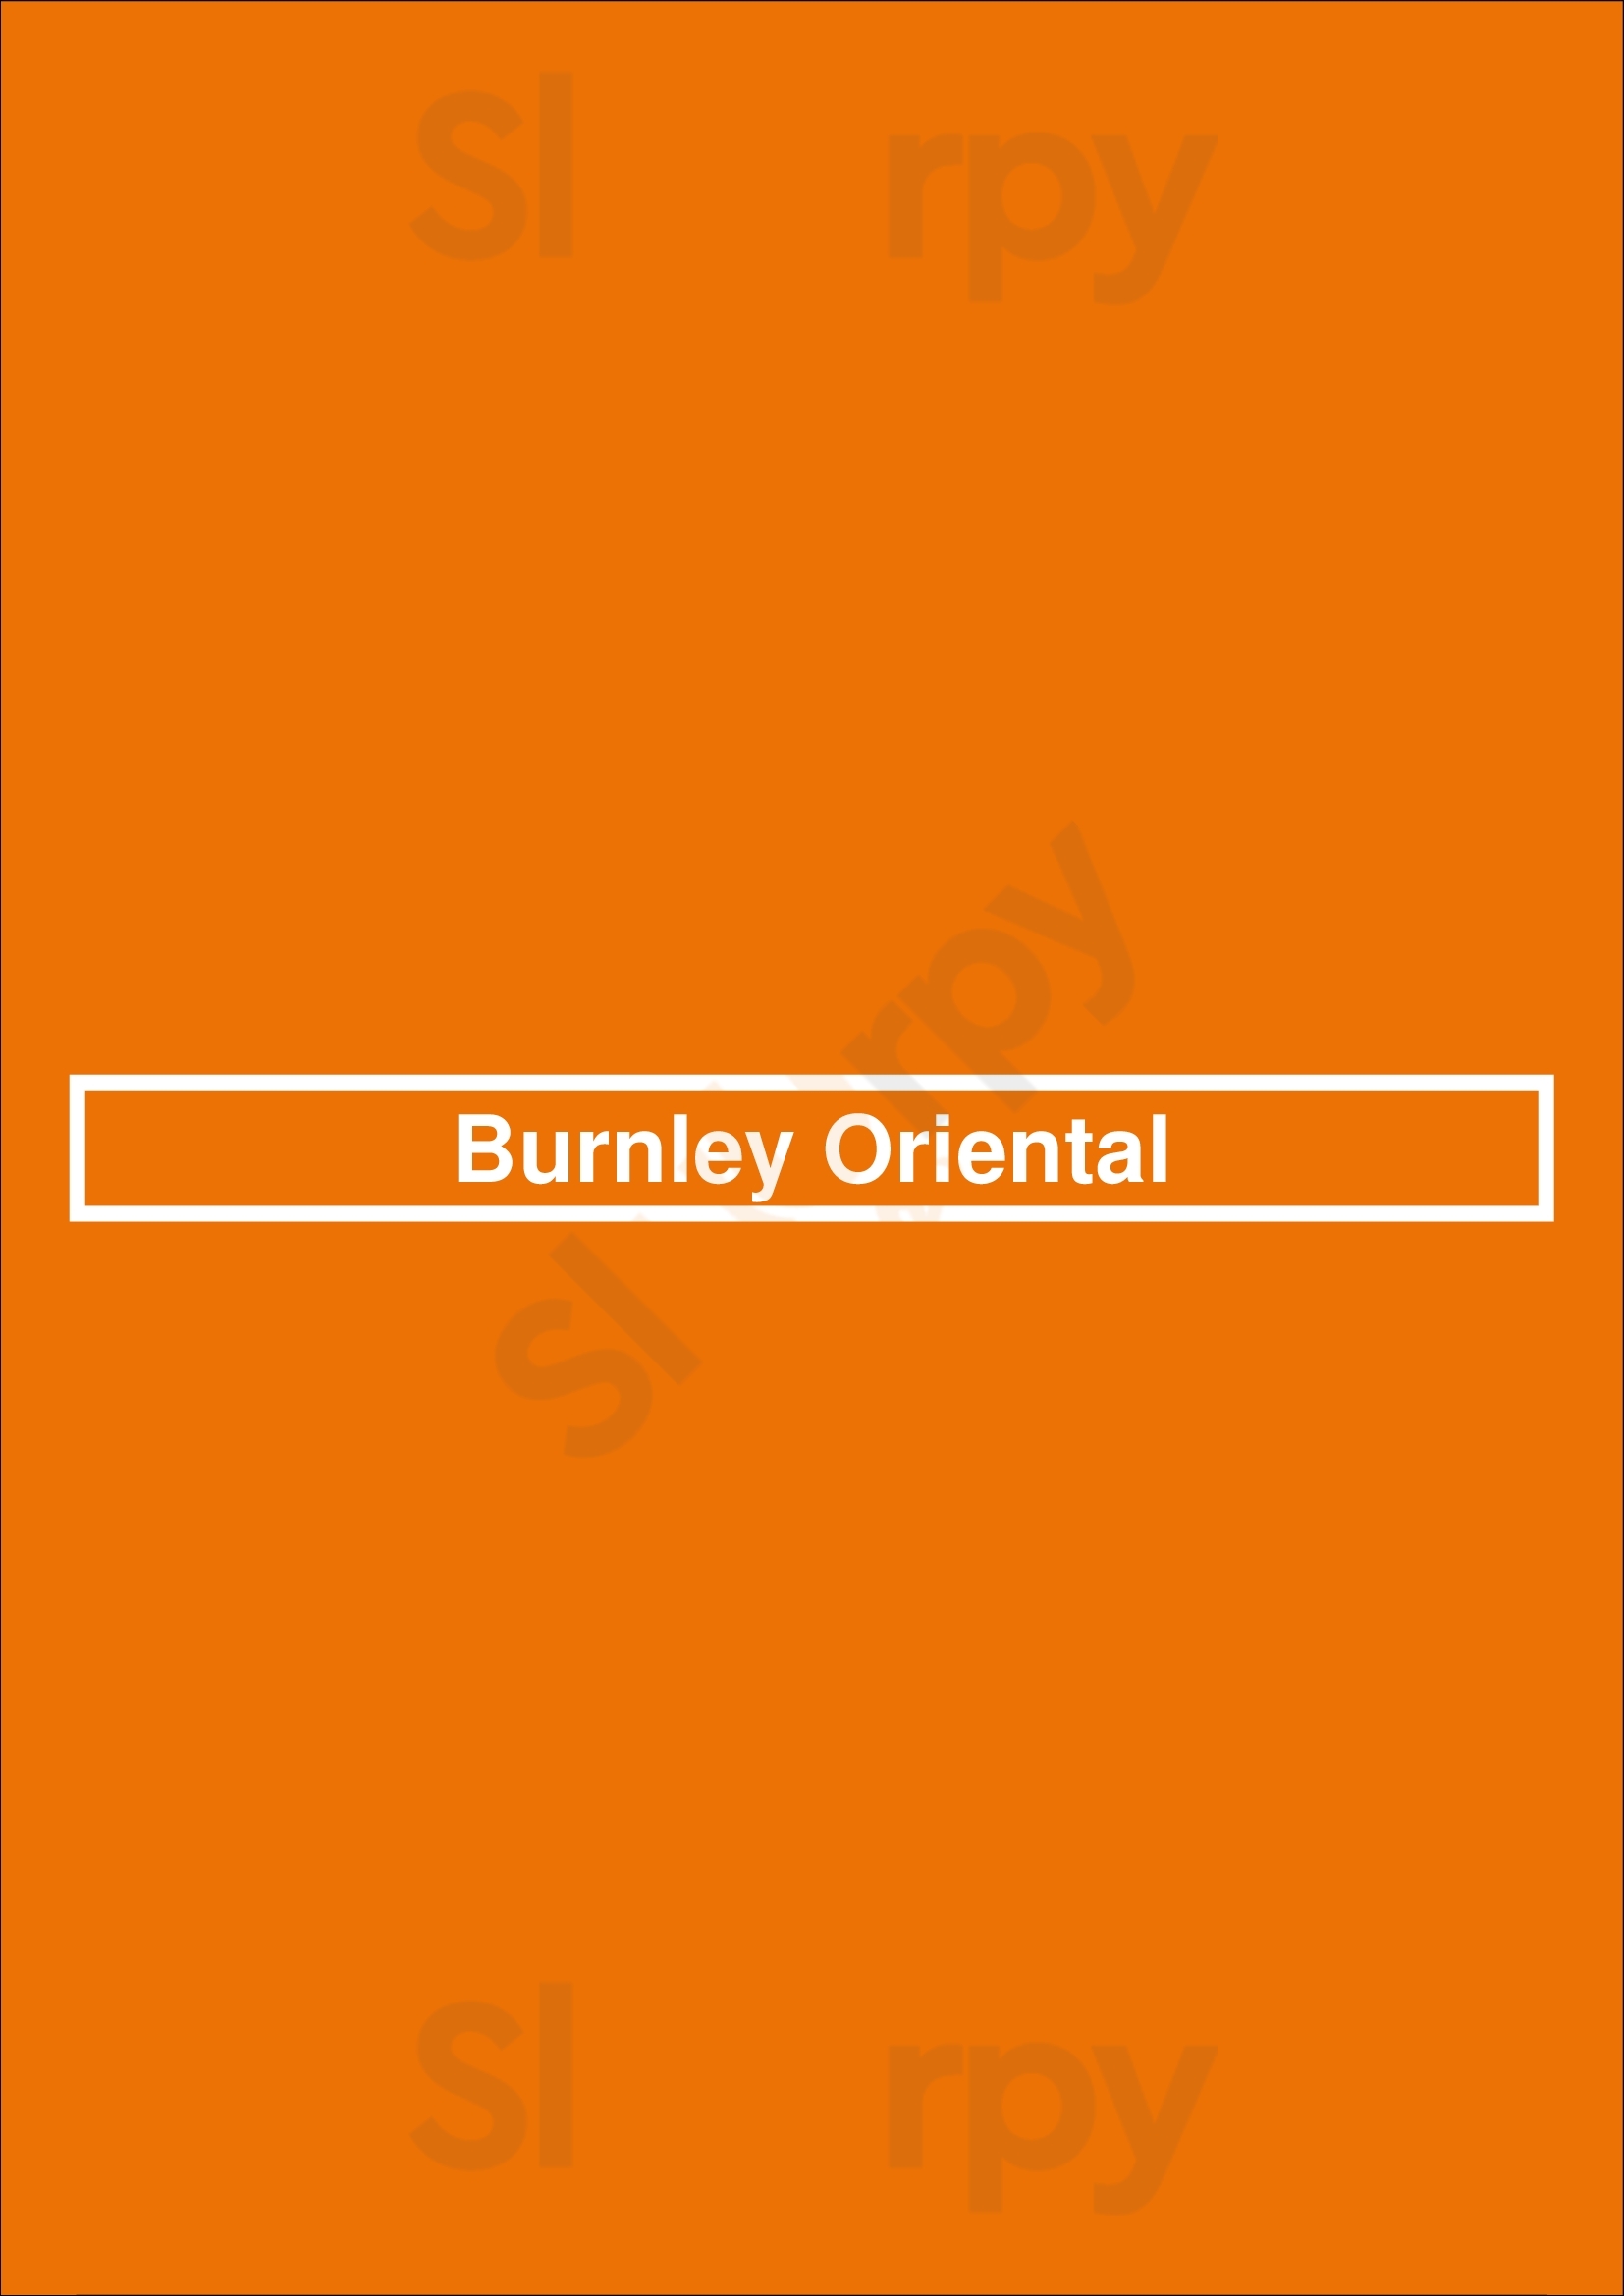 Burnley Oriental Burnley Menu - 1